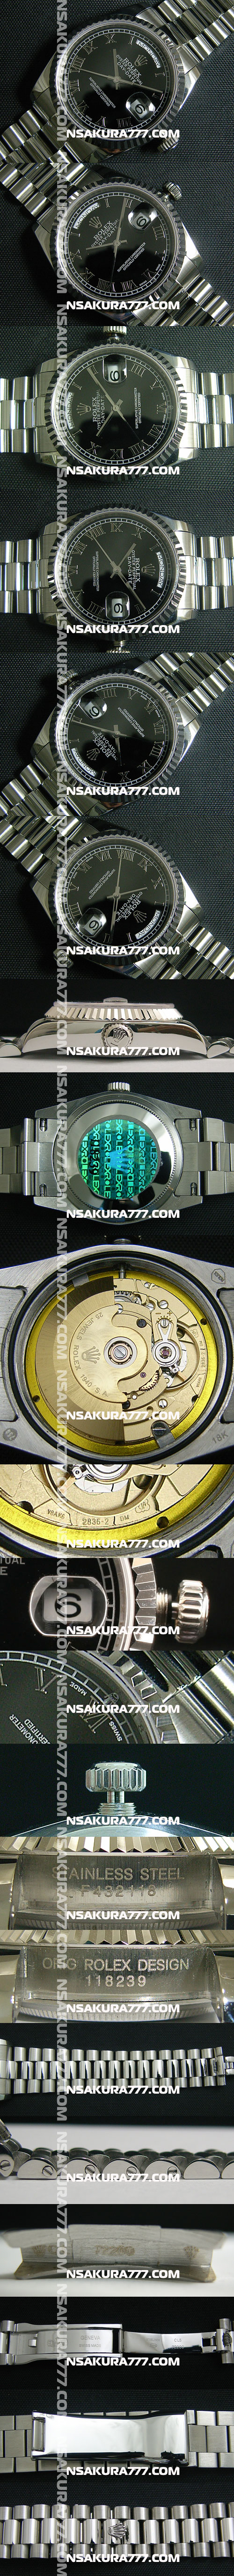 レプリカ時計ロレックスデイデイトSwiss ETA社 2836-2 ムーブメント 28800振動 オートマティック(自動巻き) - ウインドウを閉じる